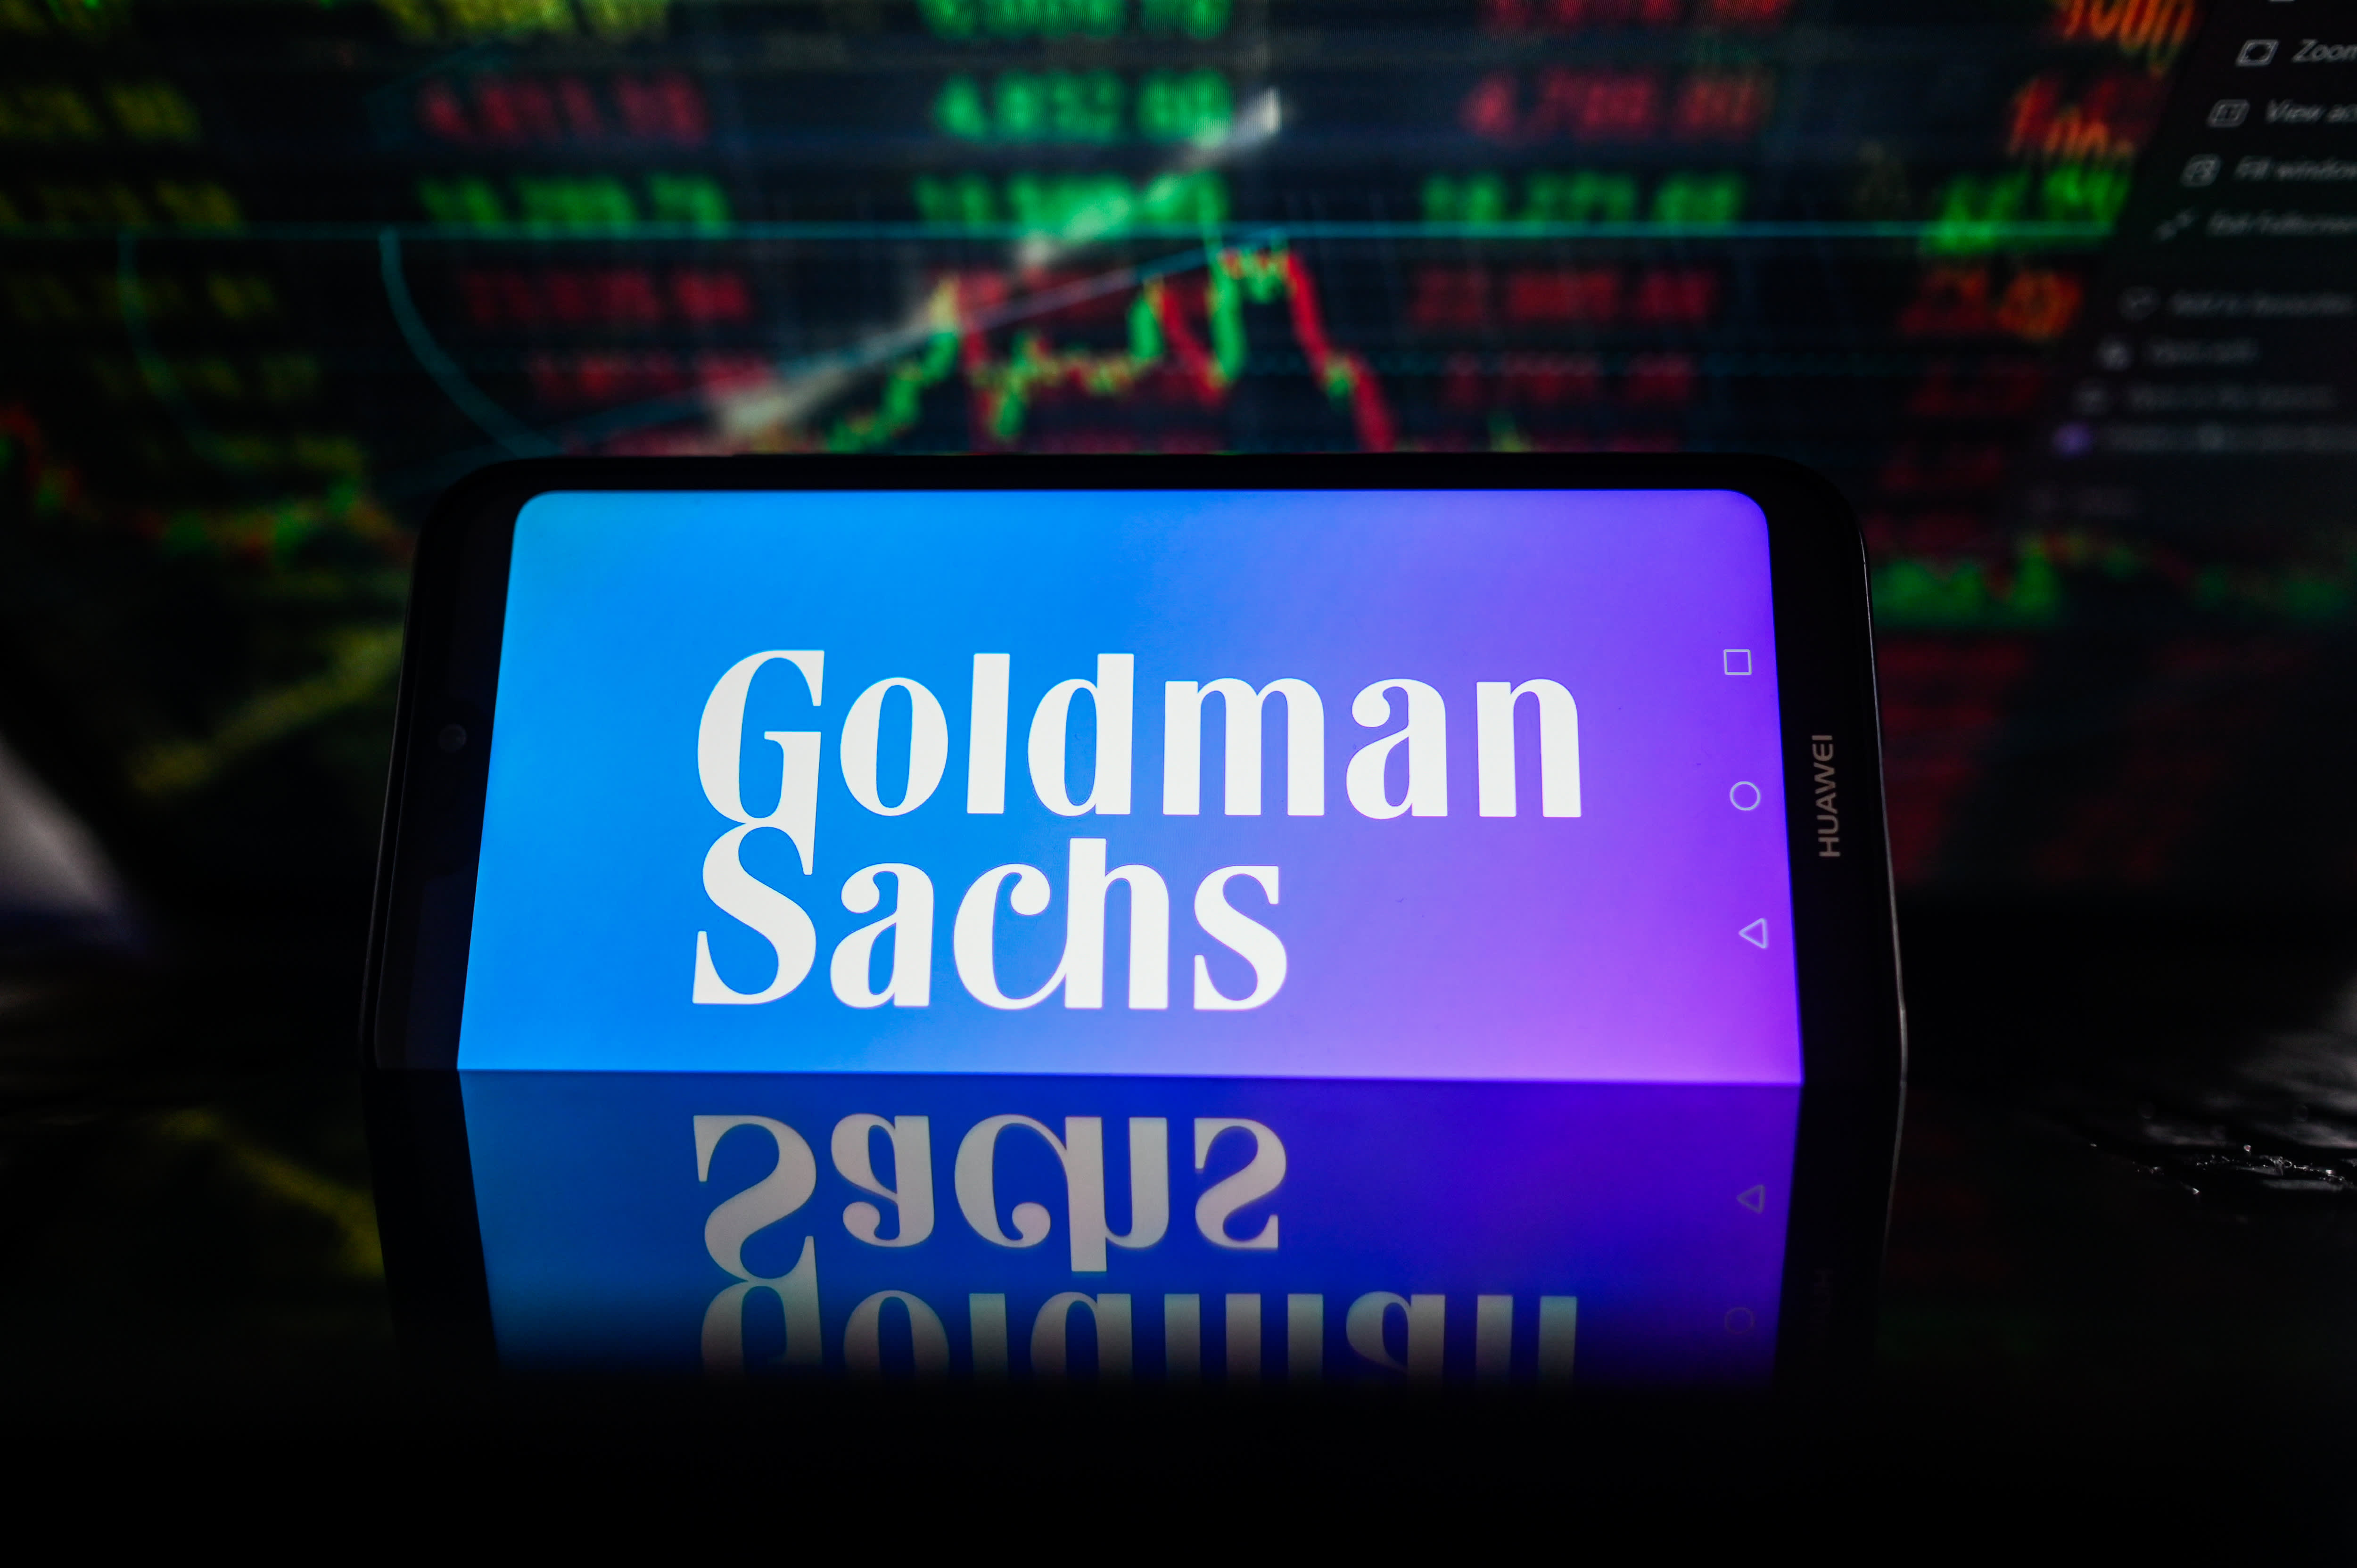 La compañía eléctrica respaldada por Goldman Sachs llega a los hogares de más estadounidenses